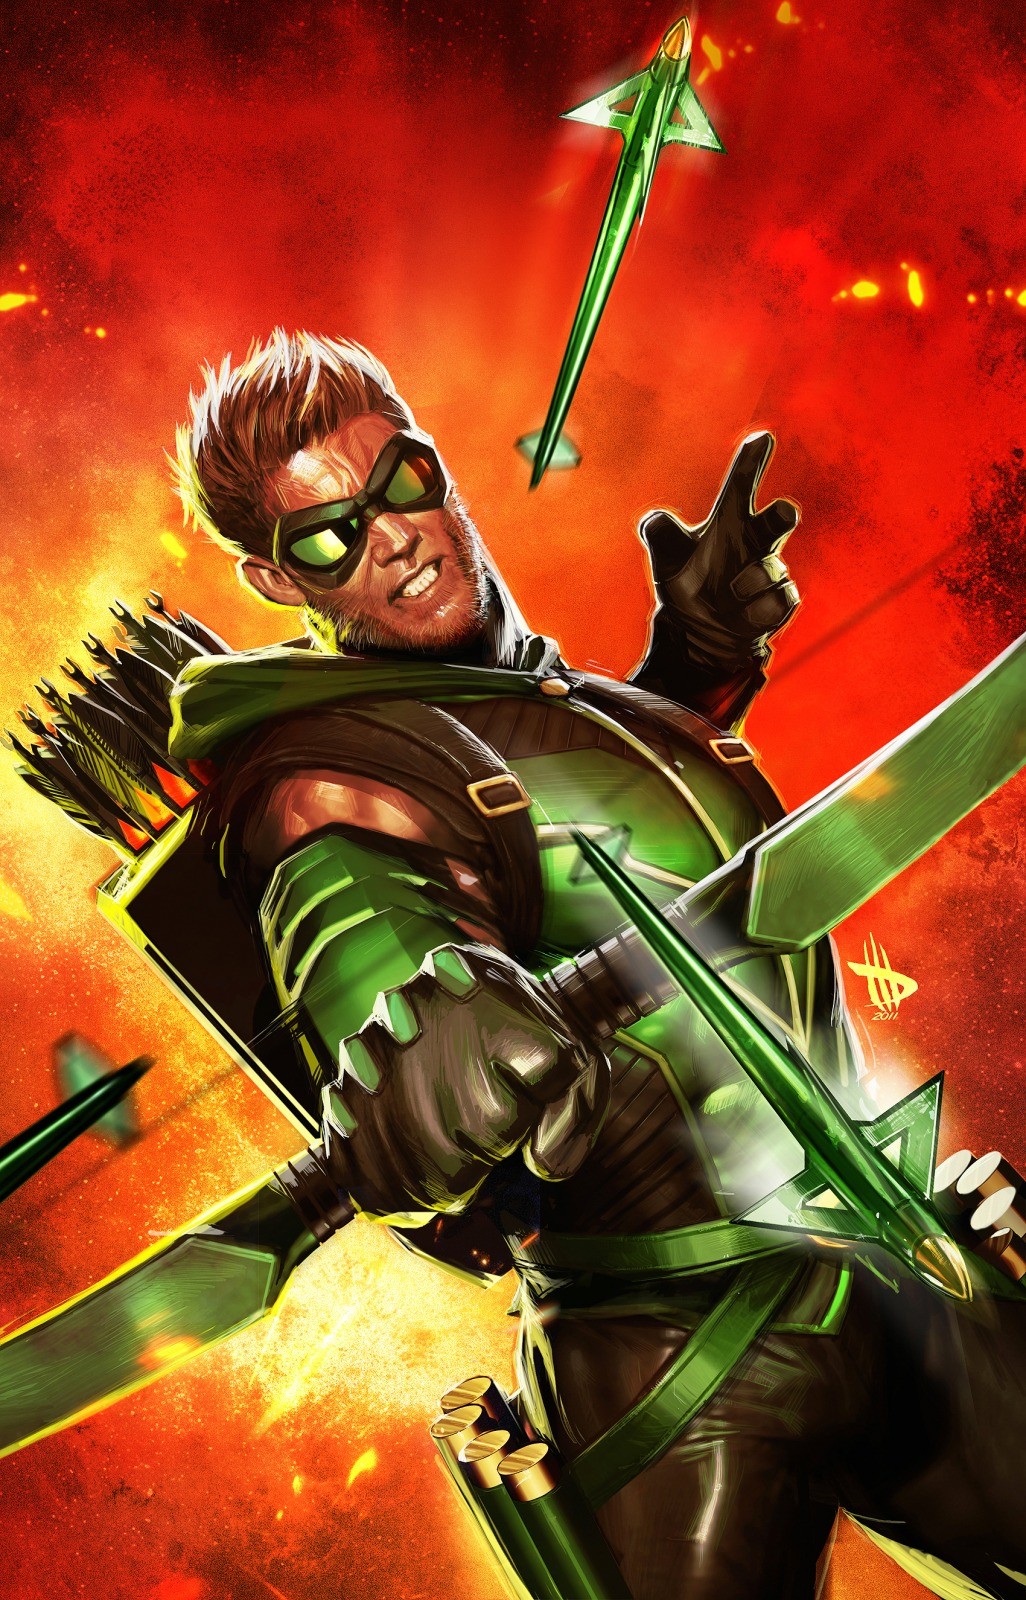 Dc Ics Superheroes Justice League Green Arrow New